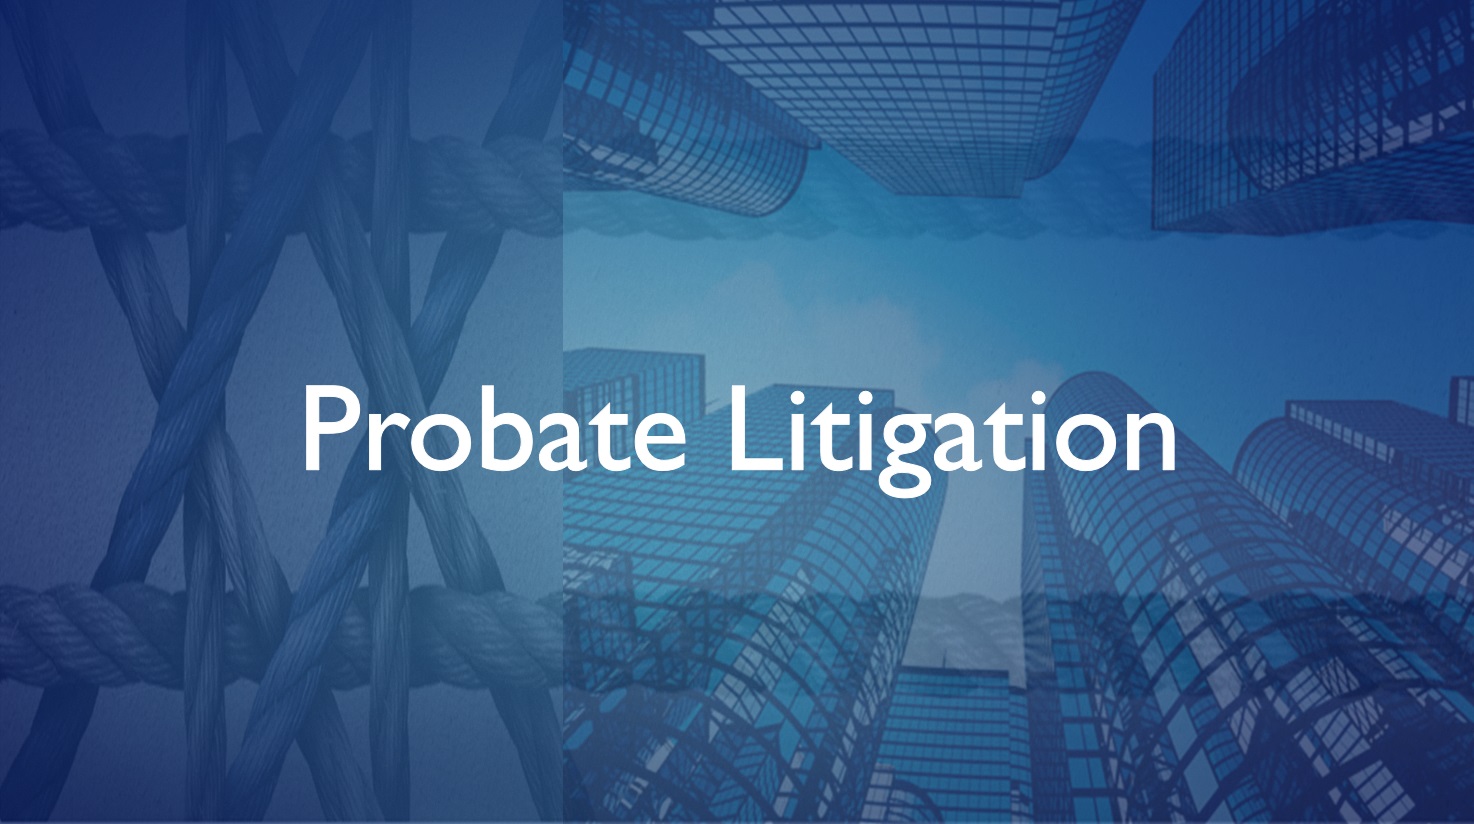 Probate Litigation Attorneys